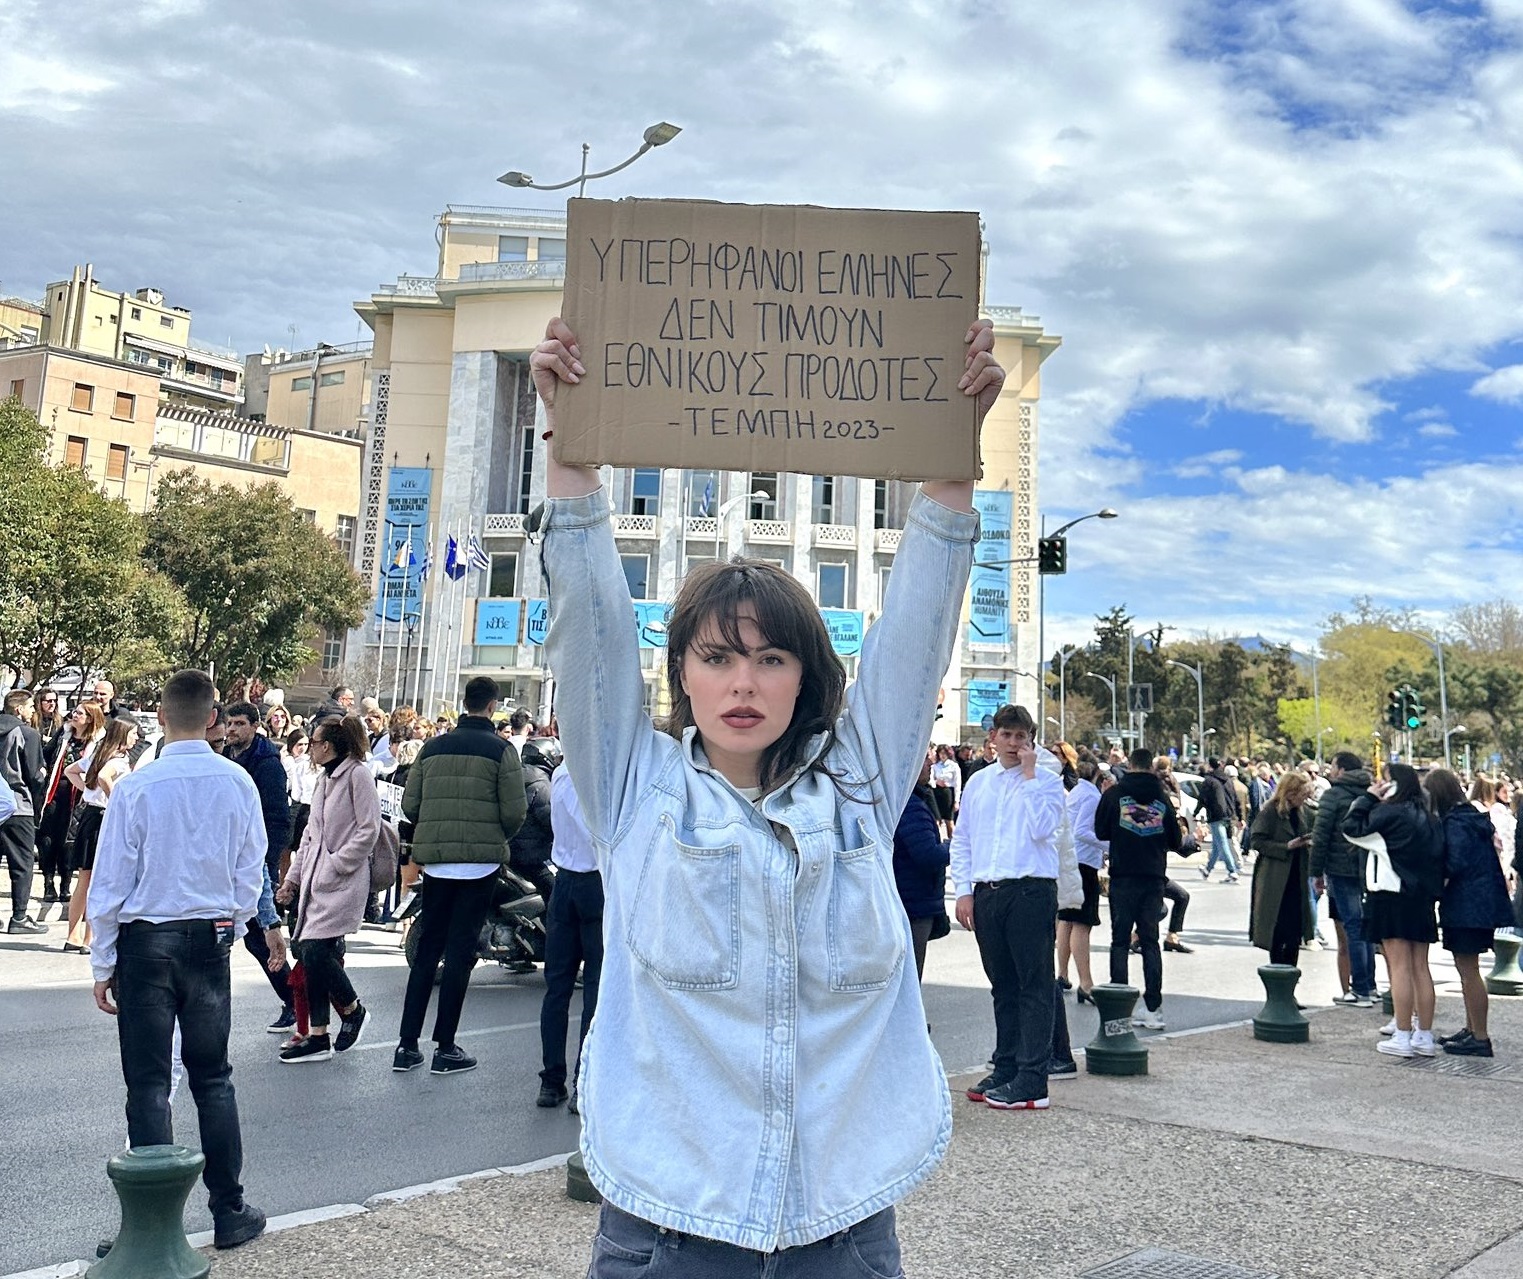 Θεσσαλονίκη: Τραυματίας των Τεμπών διαμαρτυρήθηκε παρελαύνοντας - Έστειλε μήνυμα μνήμης της τραγωδίας